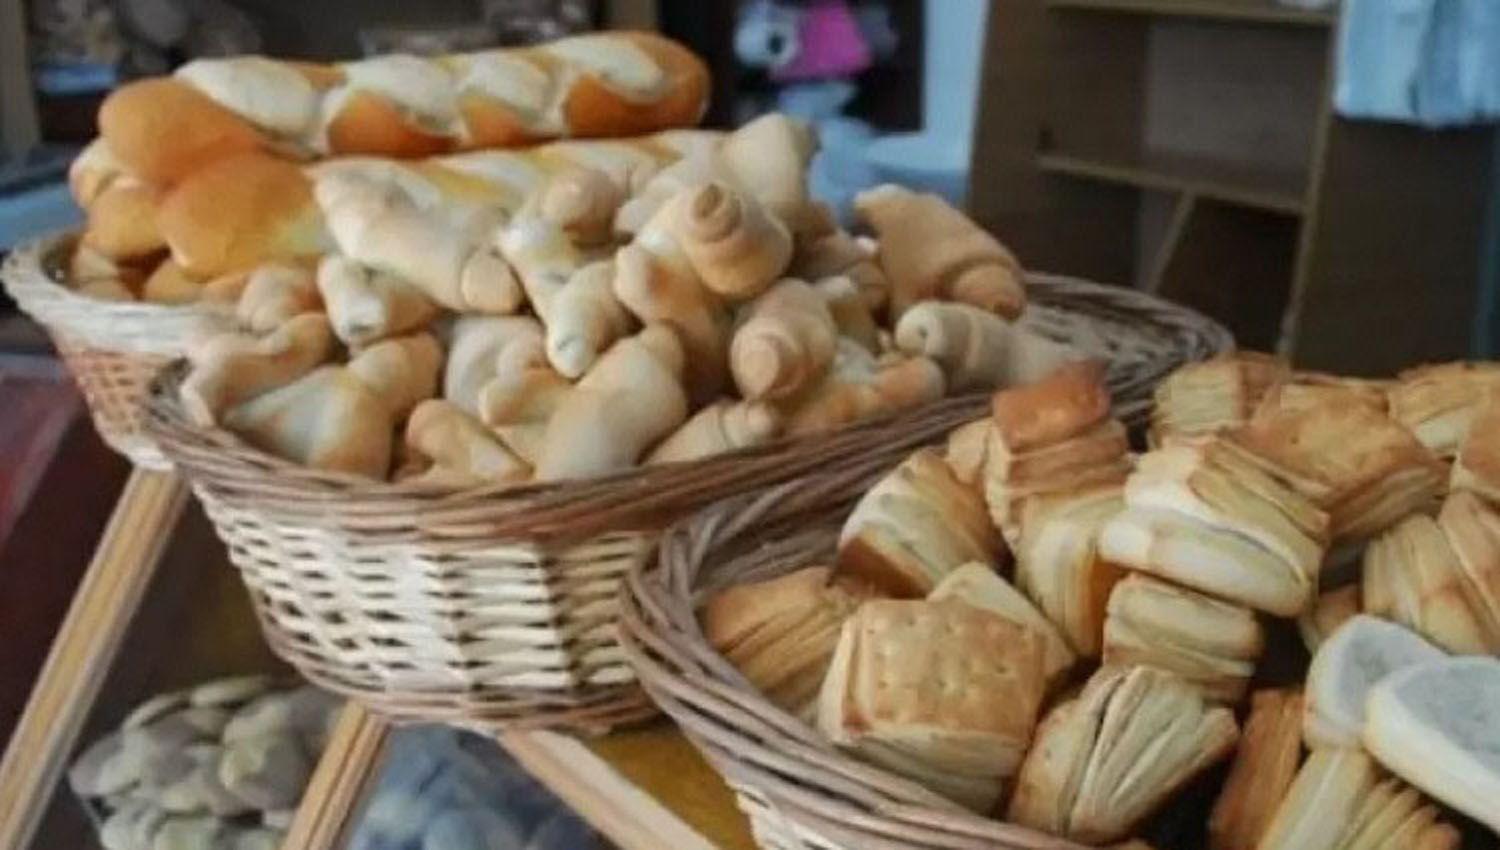 El kilogramo de pan sube a 440 luego de maacutes de 3 meses sin modificaciones